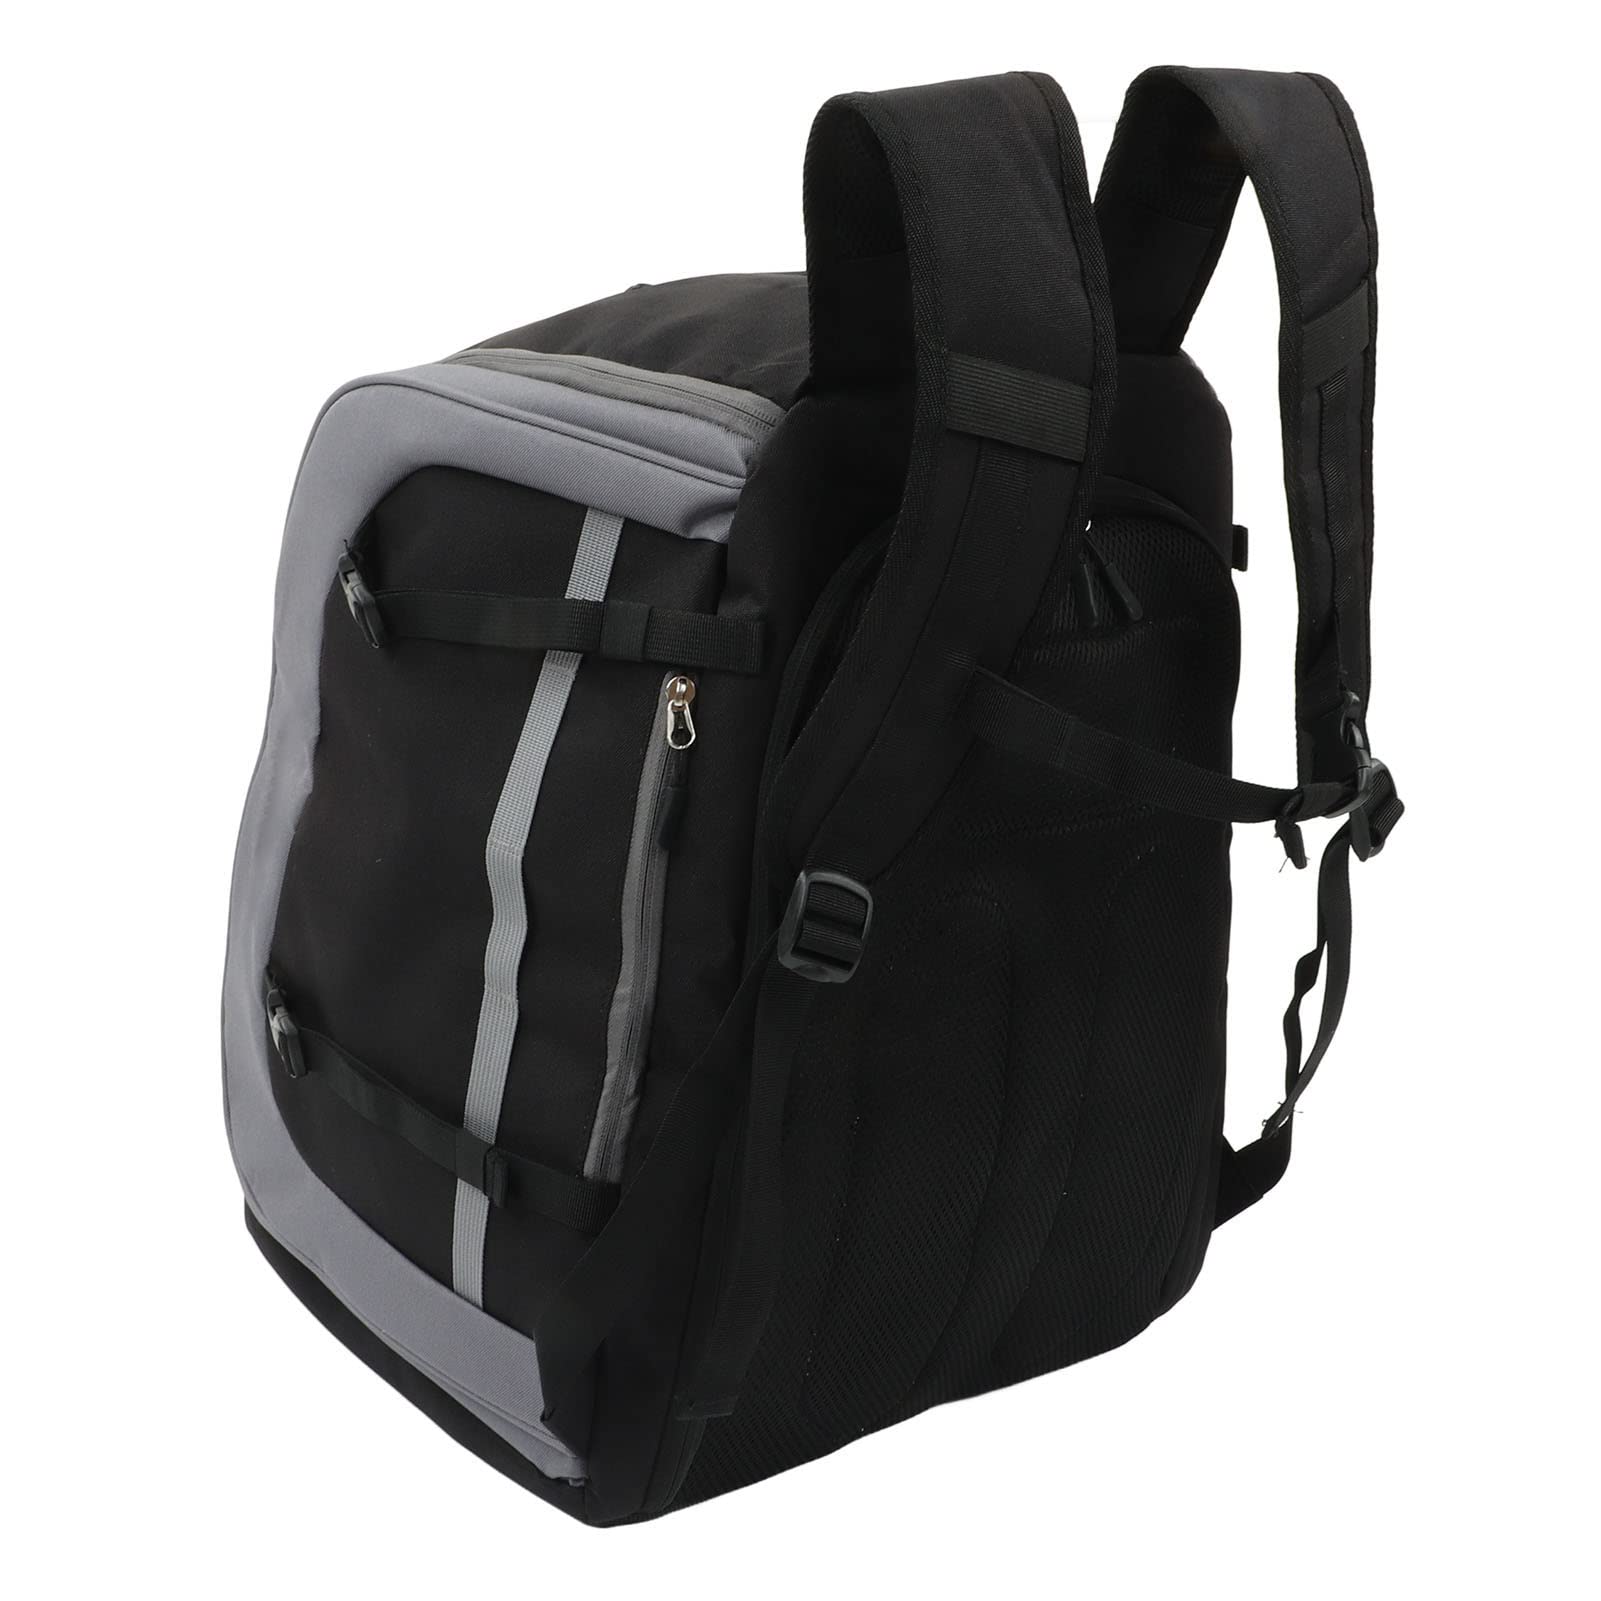 送料無料Ski Boot Bag 65L Large Capacity Snowboarding Backpack Multi Compartment Black Gray Skiing Backpack Sports for Tr